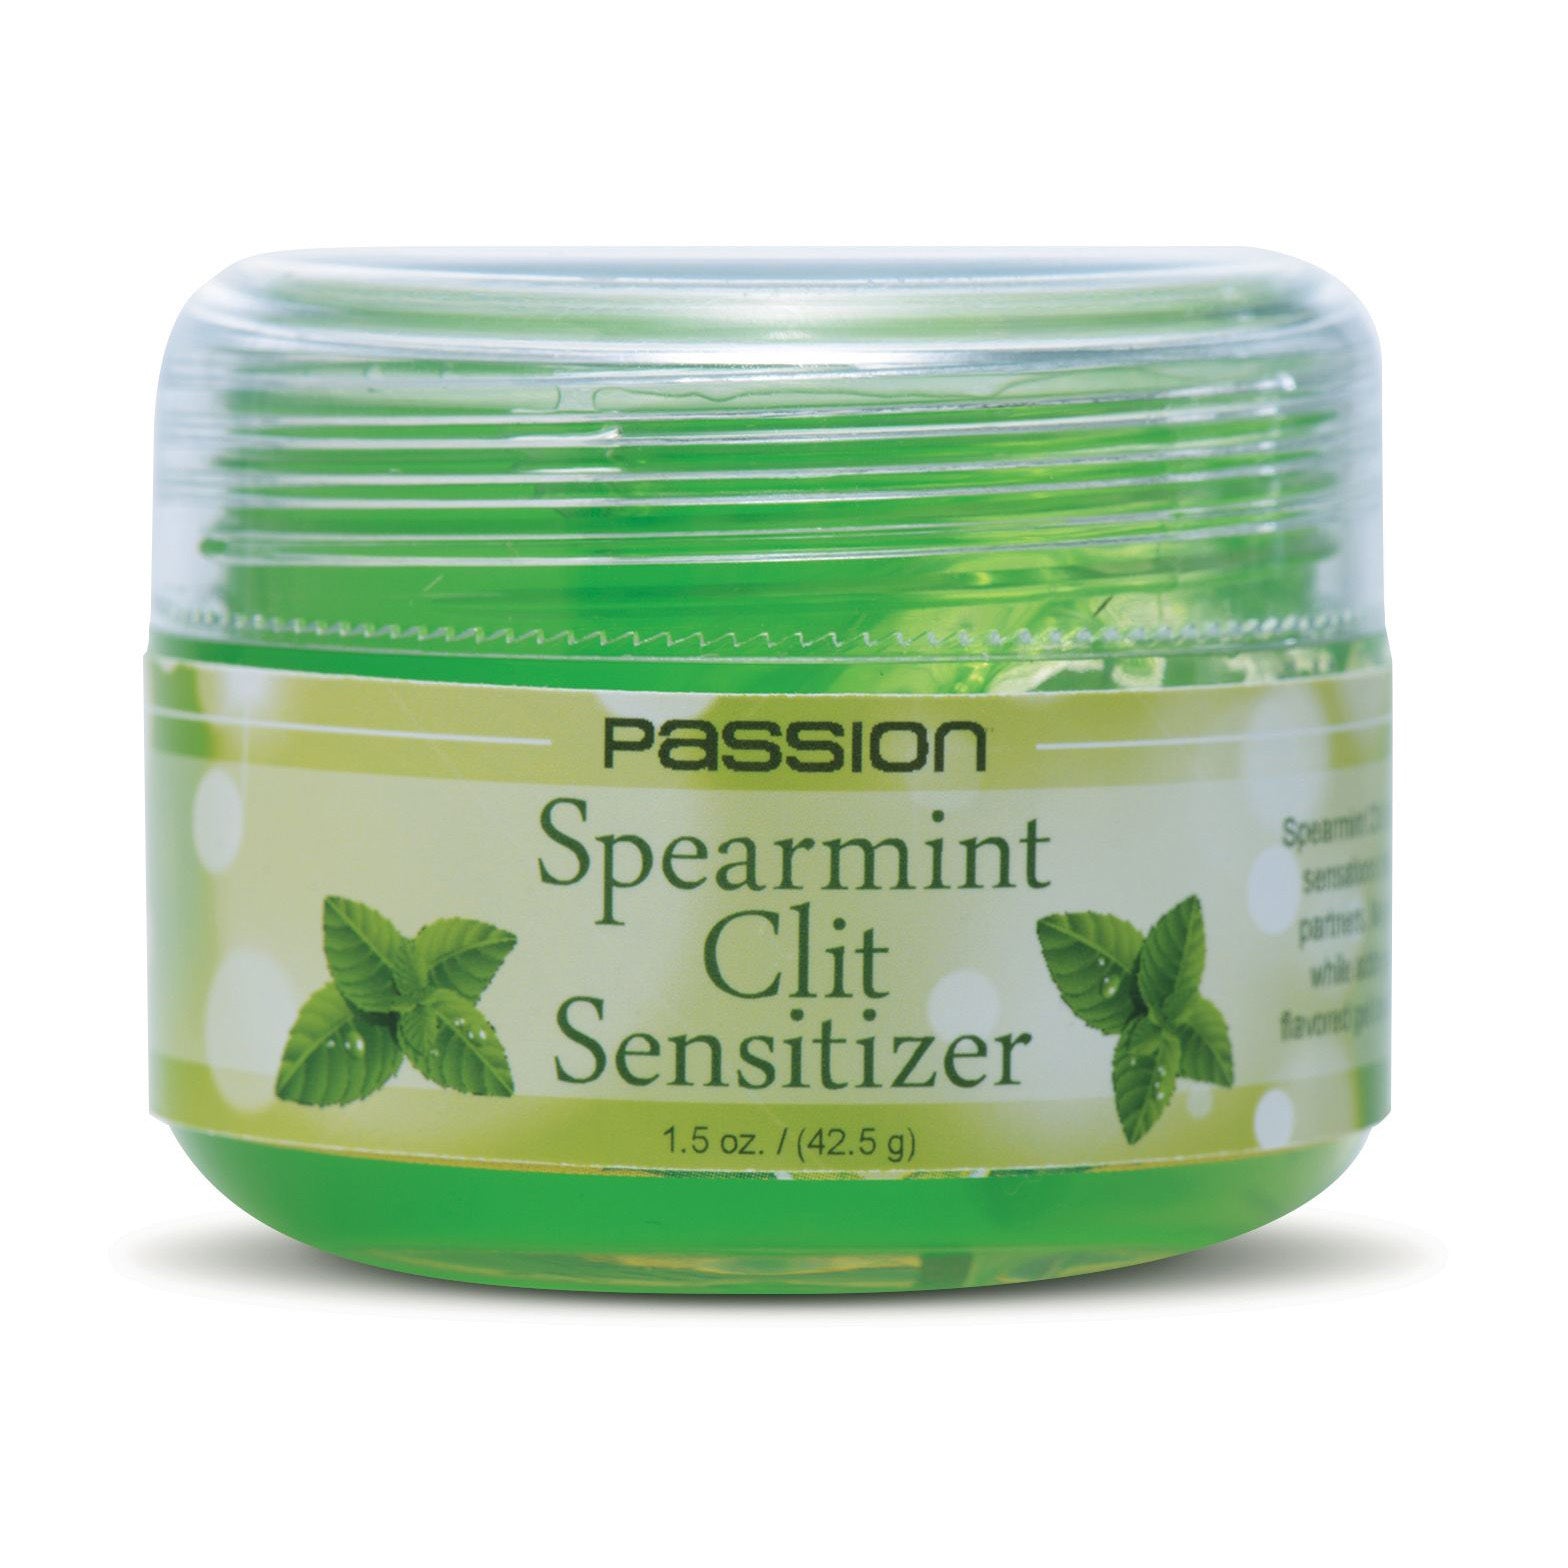 Passion Spearmint Clit Sensitizer - 1.5 oz - UABDSM